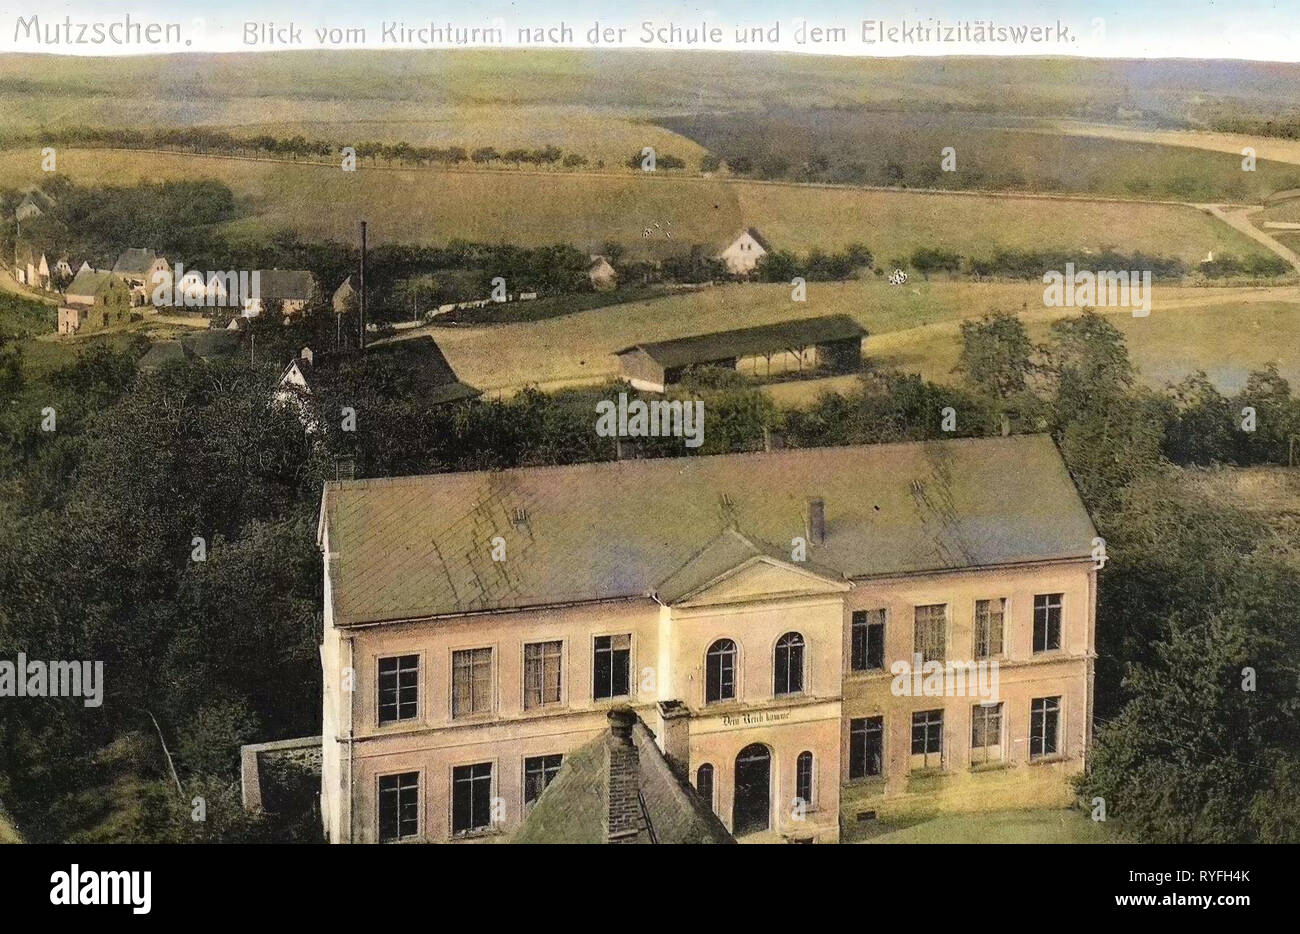 Schools in Landkreis Leipzig, Mutzschen, 1910, Landkreis Leipzig, Blick vom Kirchturm nach der Schule und Elektrizitätswerk, Germany Stock Photo